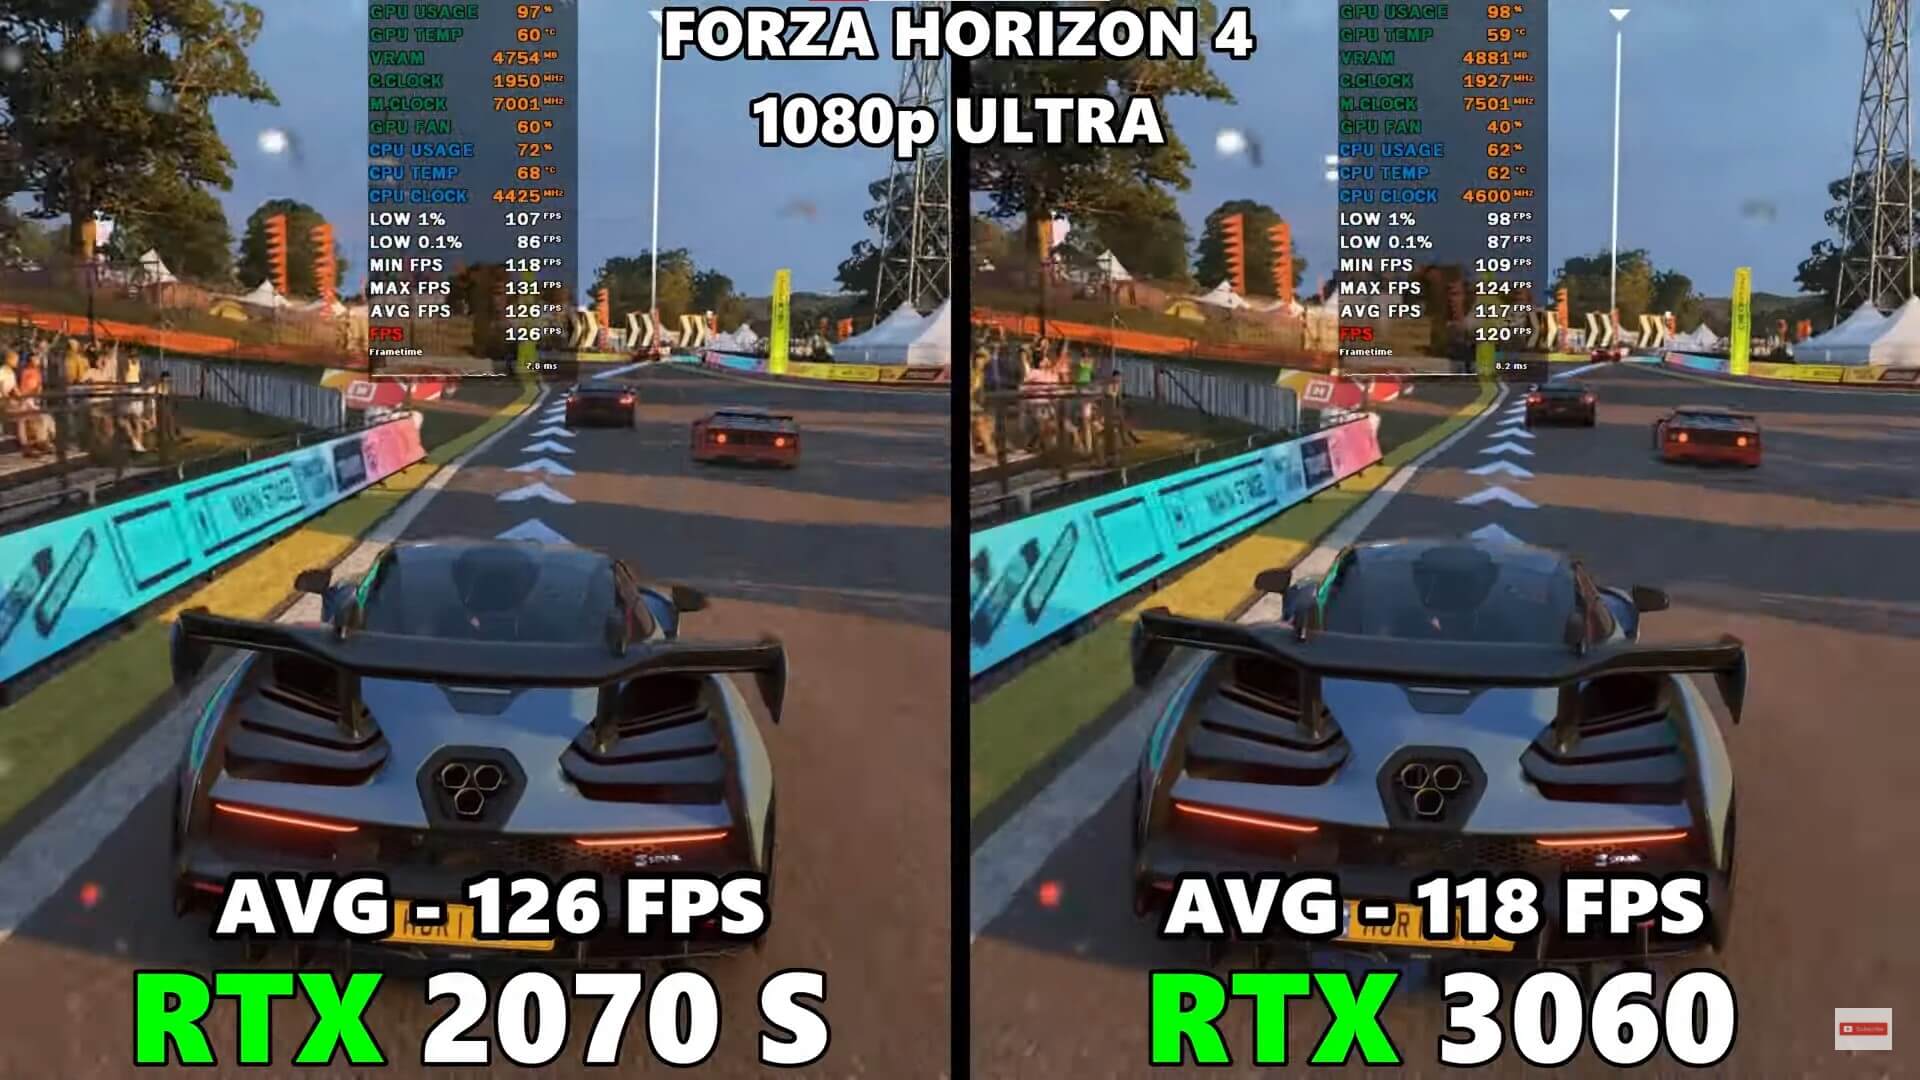 Forza Horizon 4 FPS-Test für RTX 2070 Super Vs. 3060. Quelle: FPS-Test